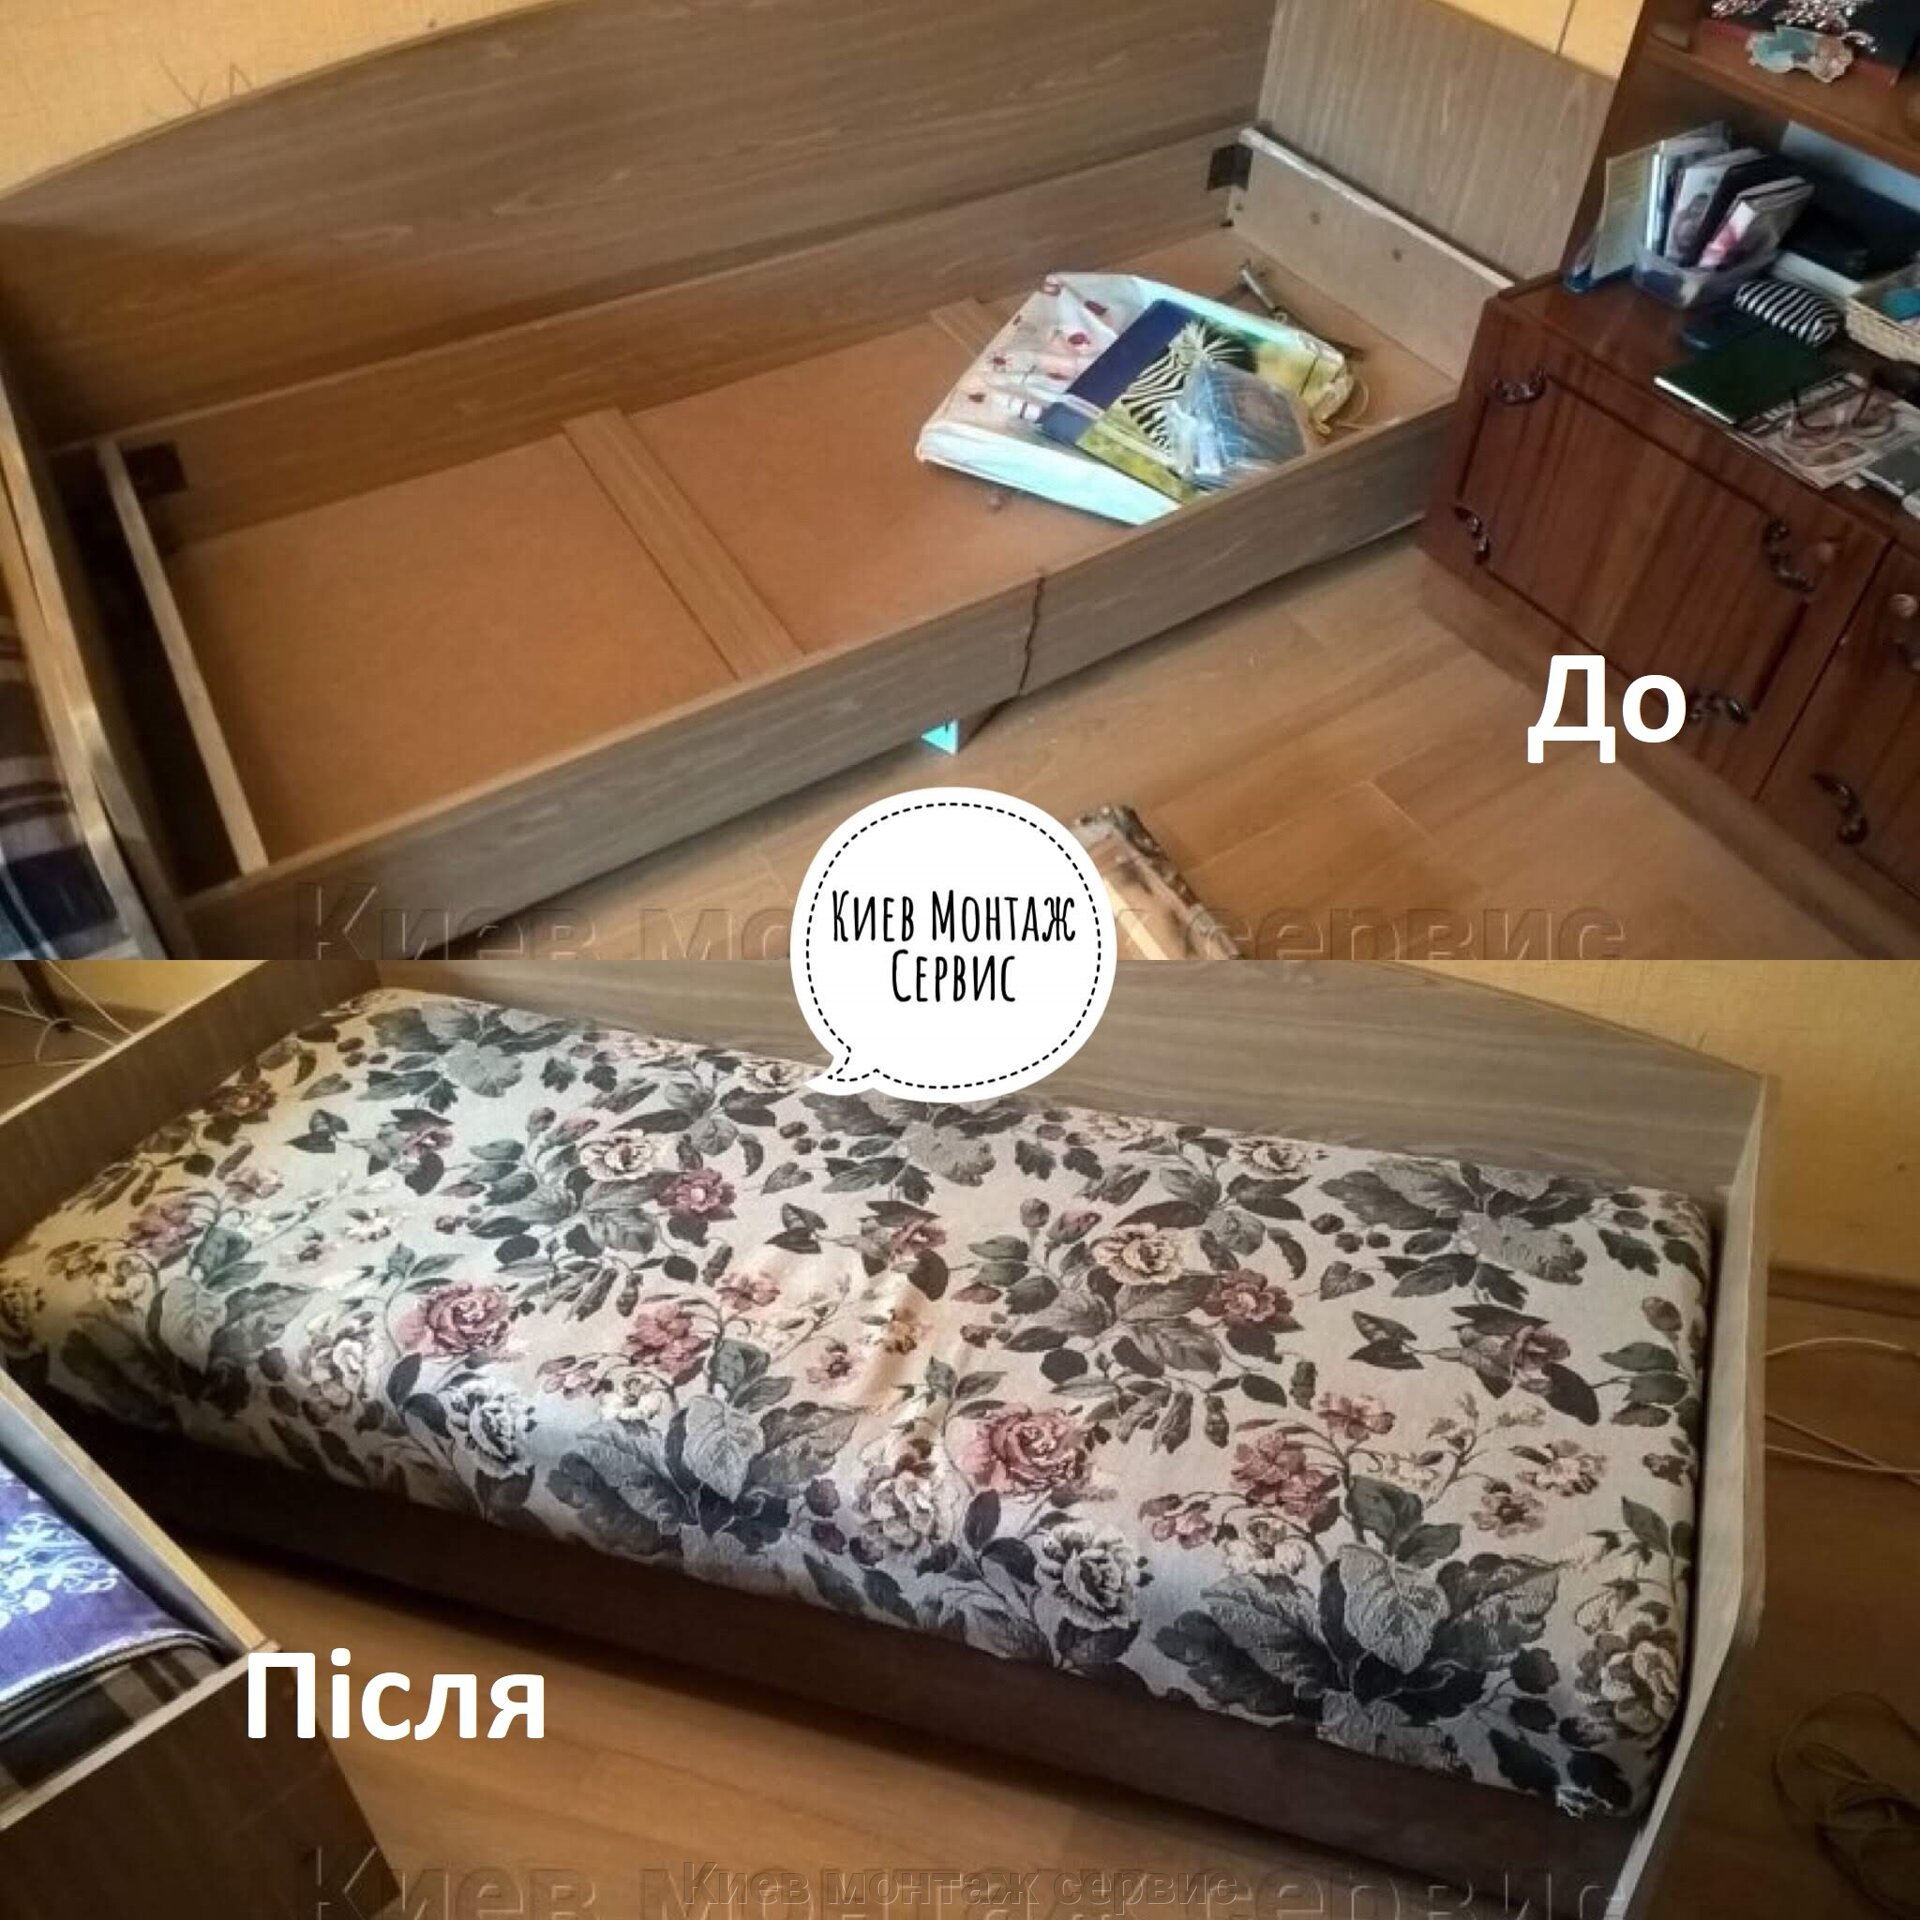 Починить диван. Ремонт диванов. Перетяжка мебели в Киеве, Левый и правый берег